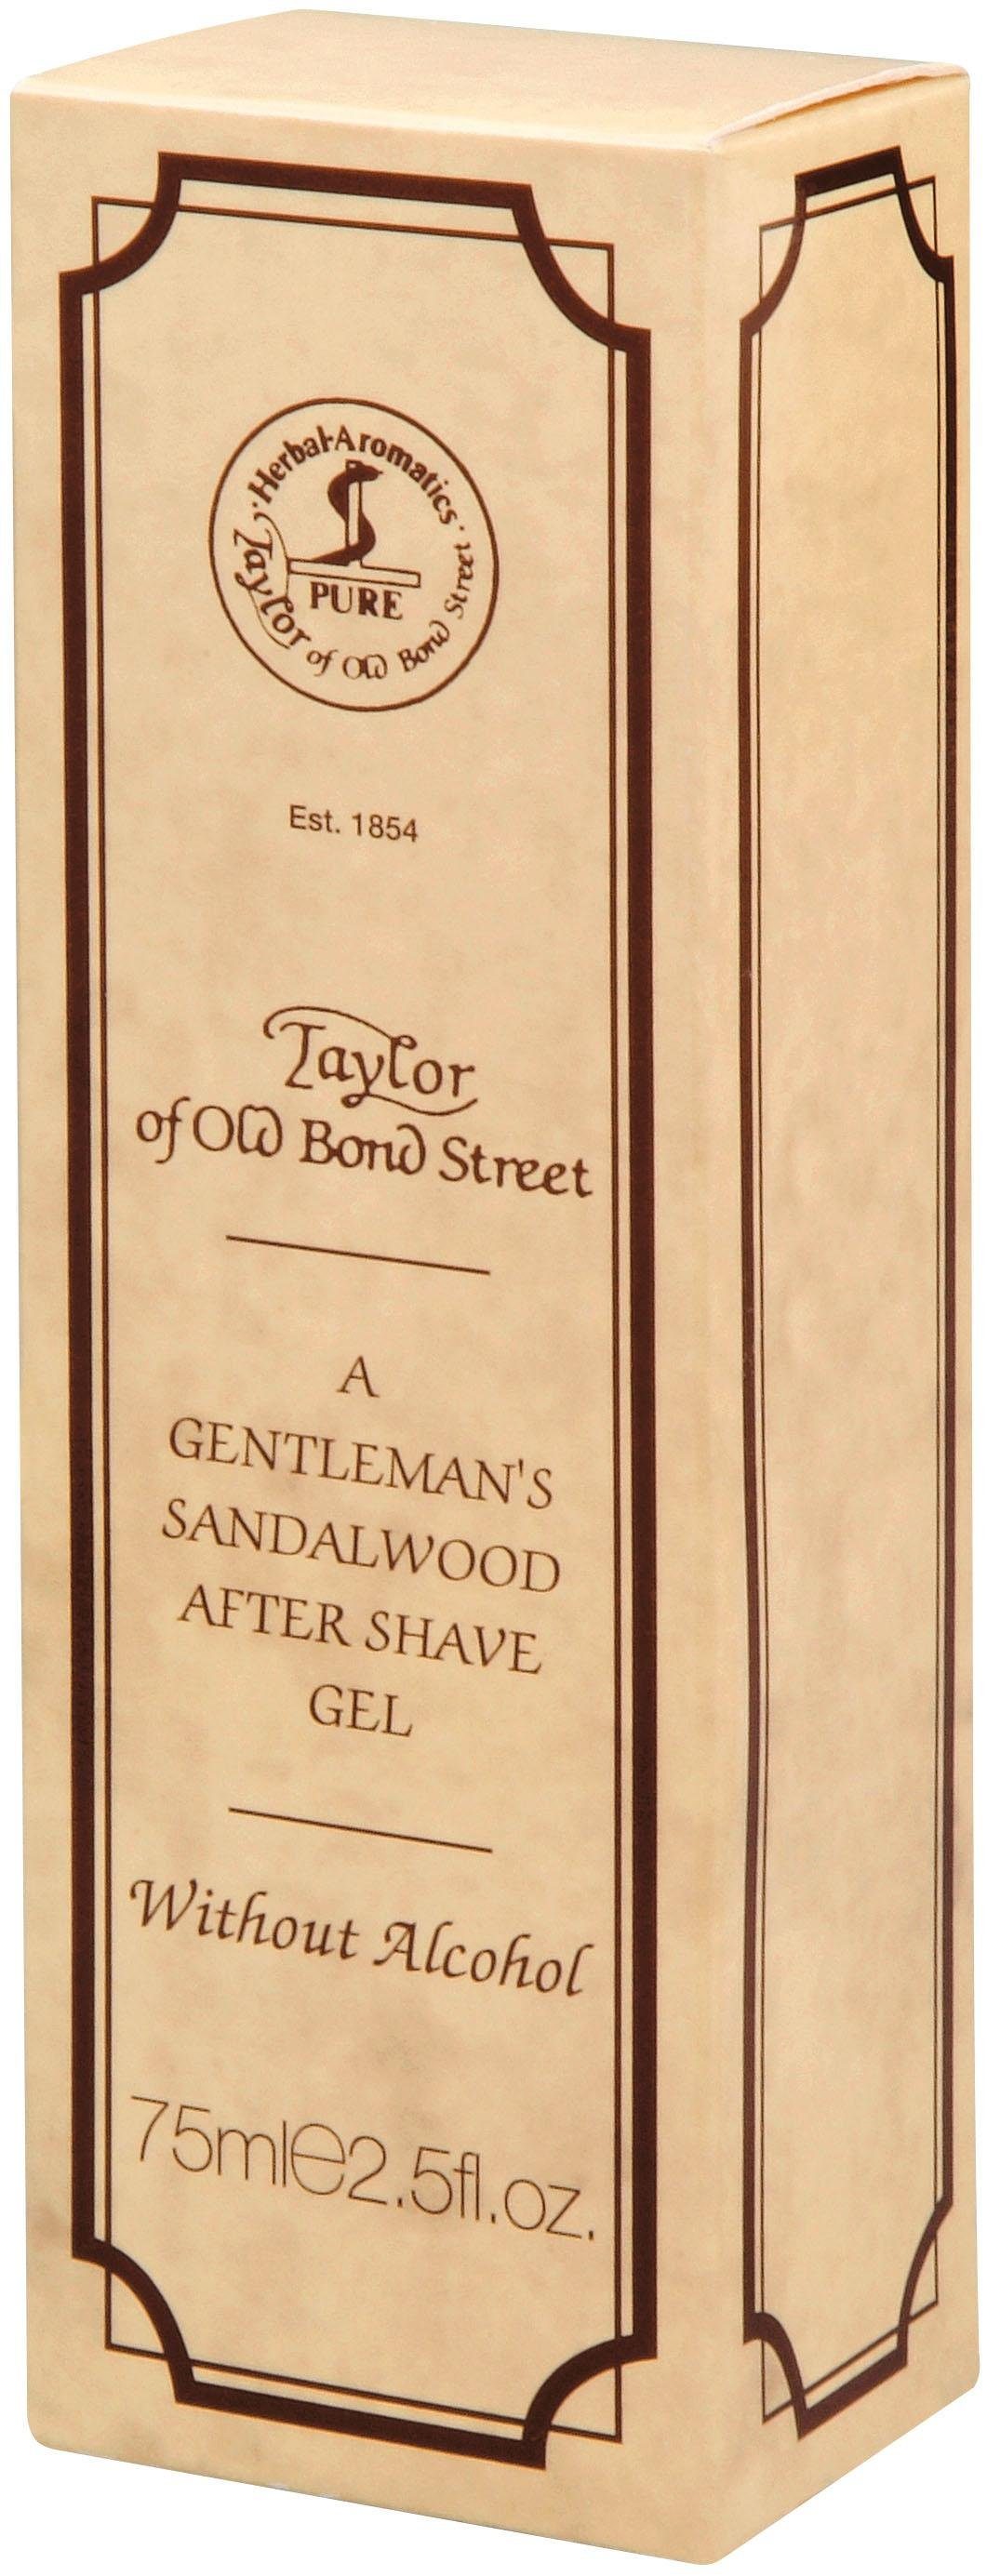 After-Shave Old mit Bond ätherischen Ölen Street Sandalwood, Taylor of Gel